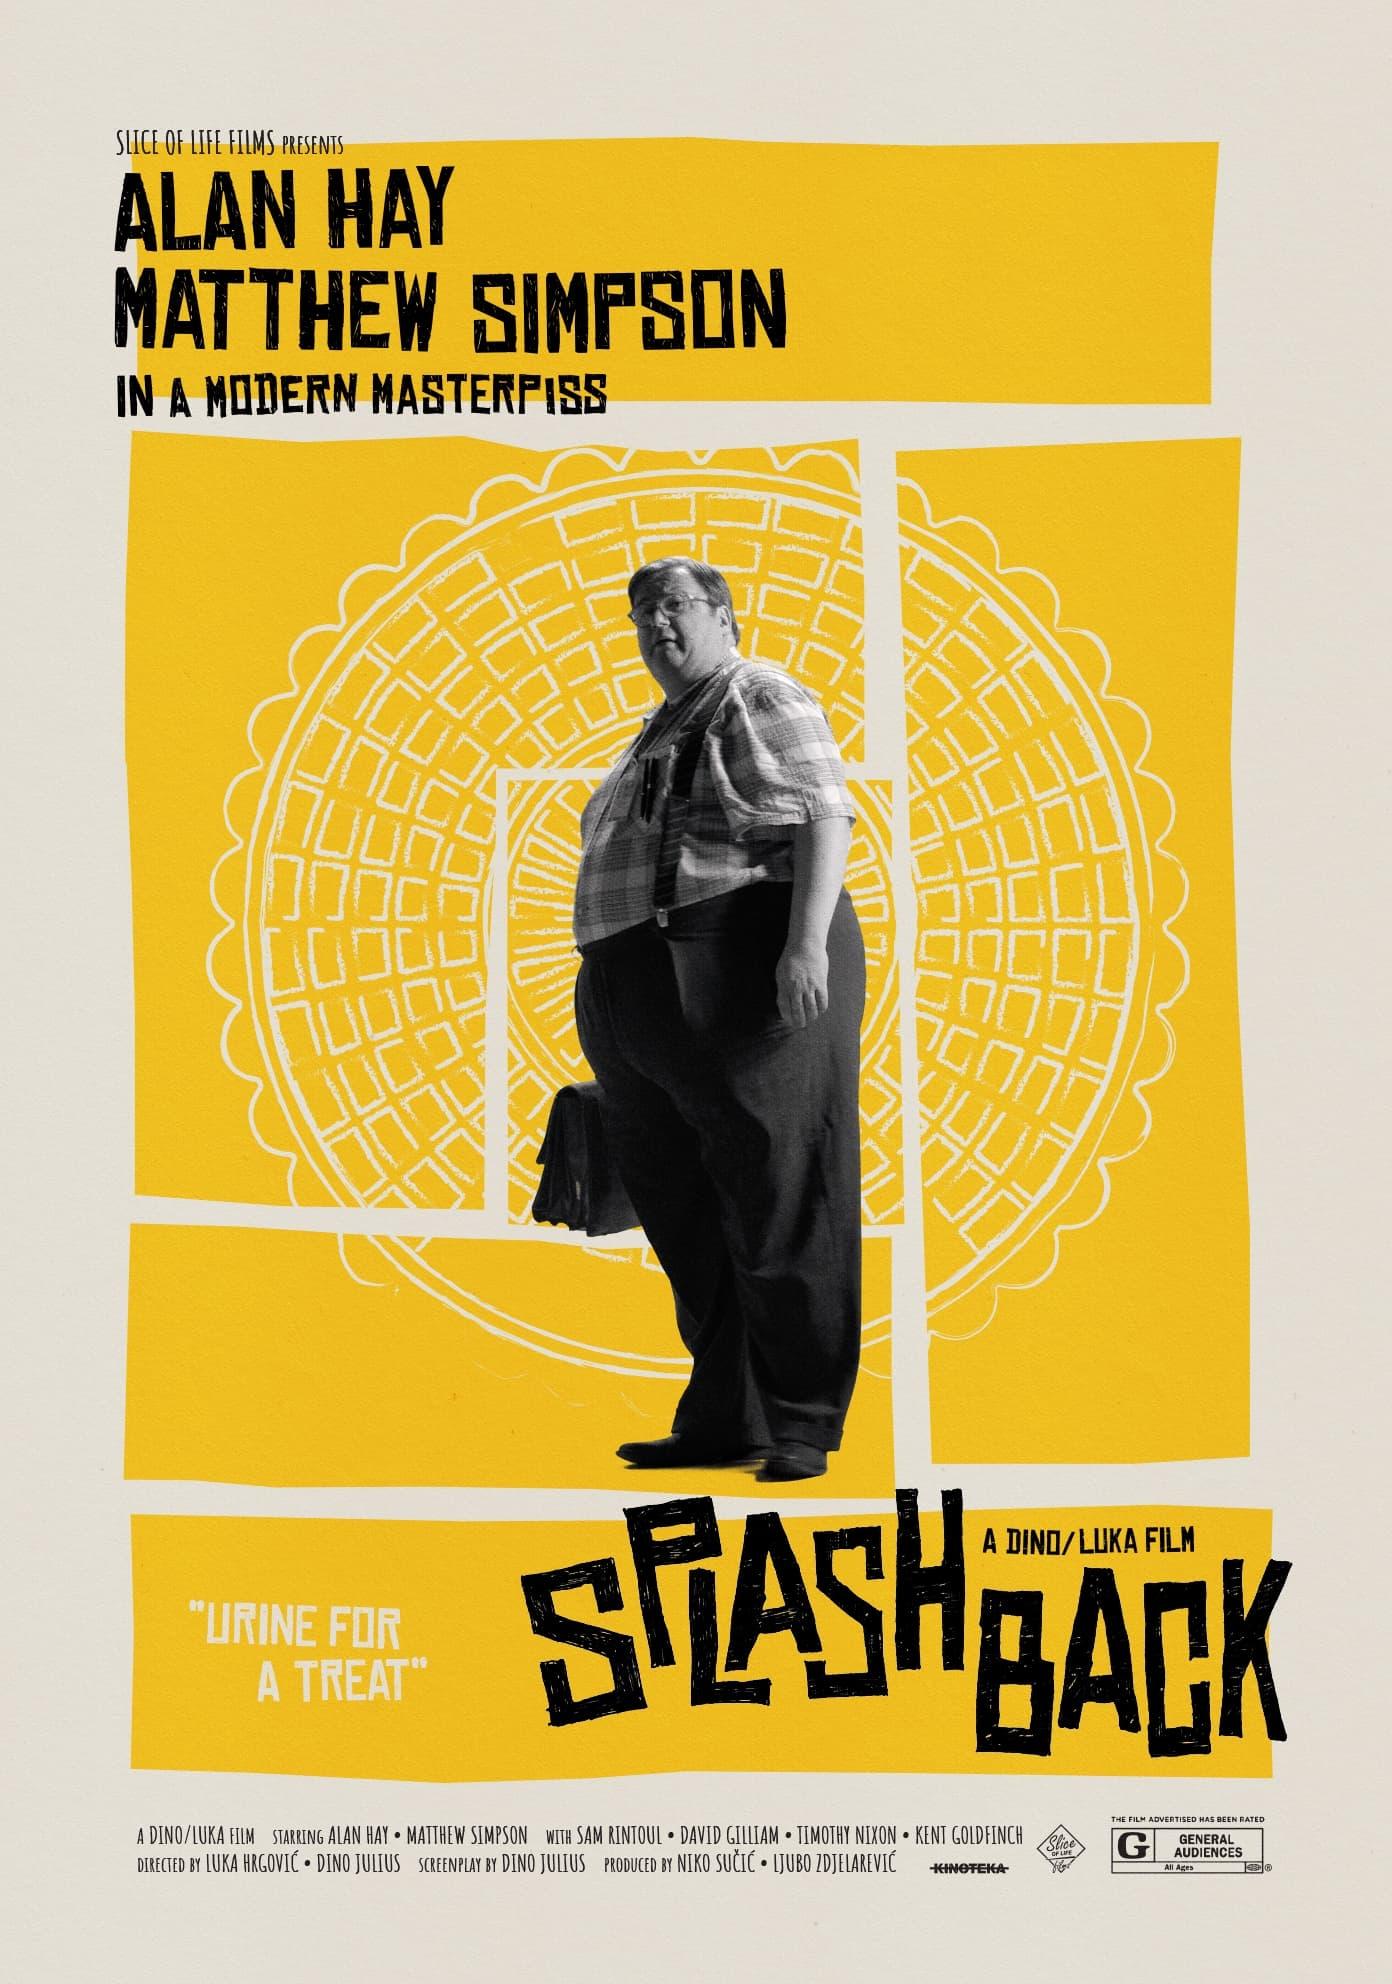 Splashback poster